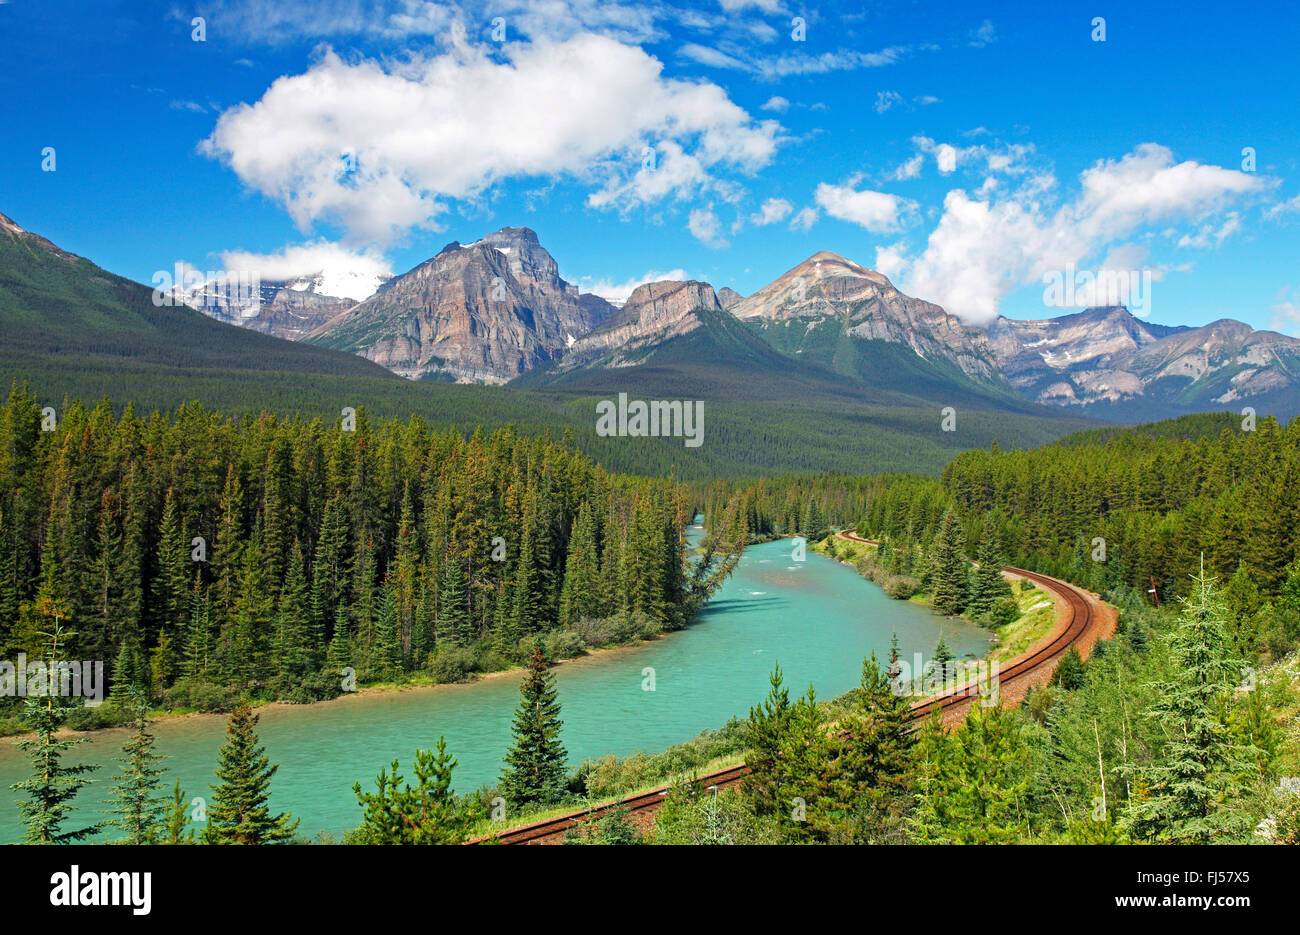 La ligne de chemin de fer à travers la vallée de la rivière Bow, montagnes Rocheuses, Canada, Alberta, parc national de Banff Banque D'Images